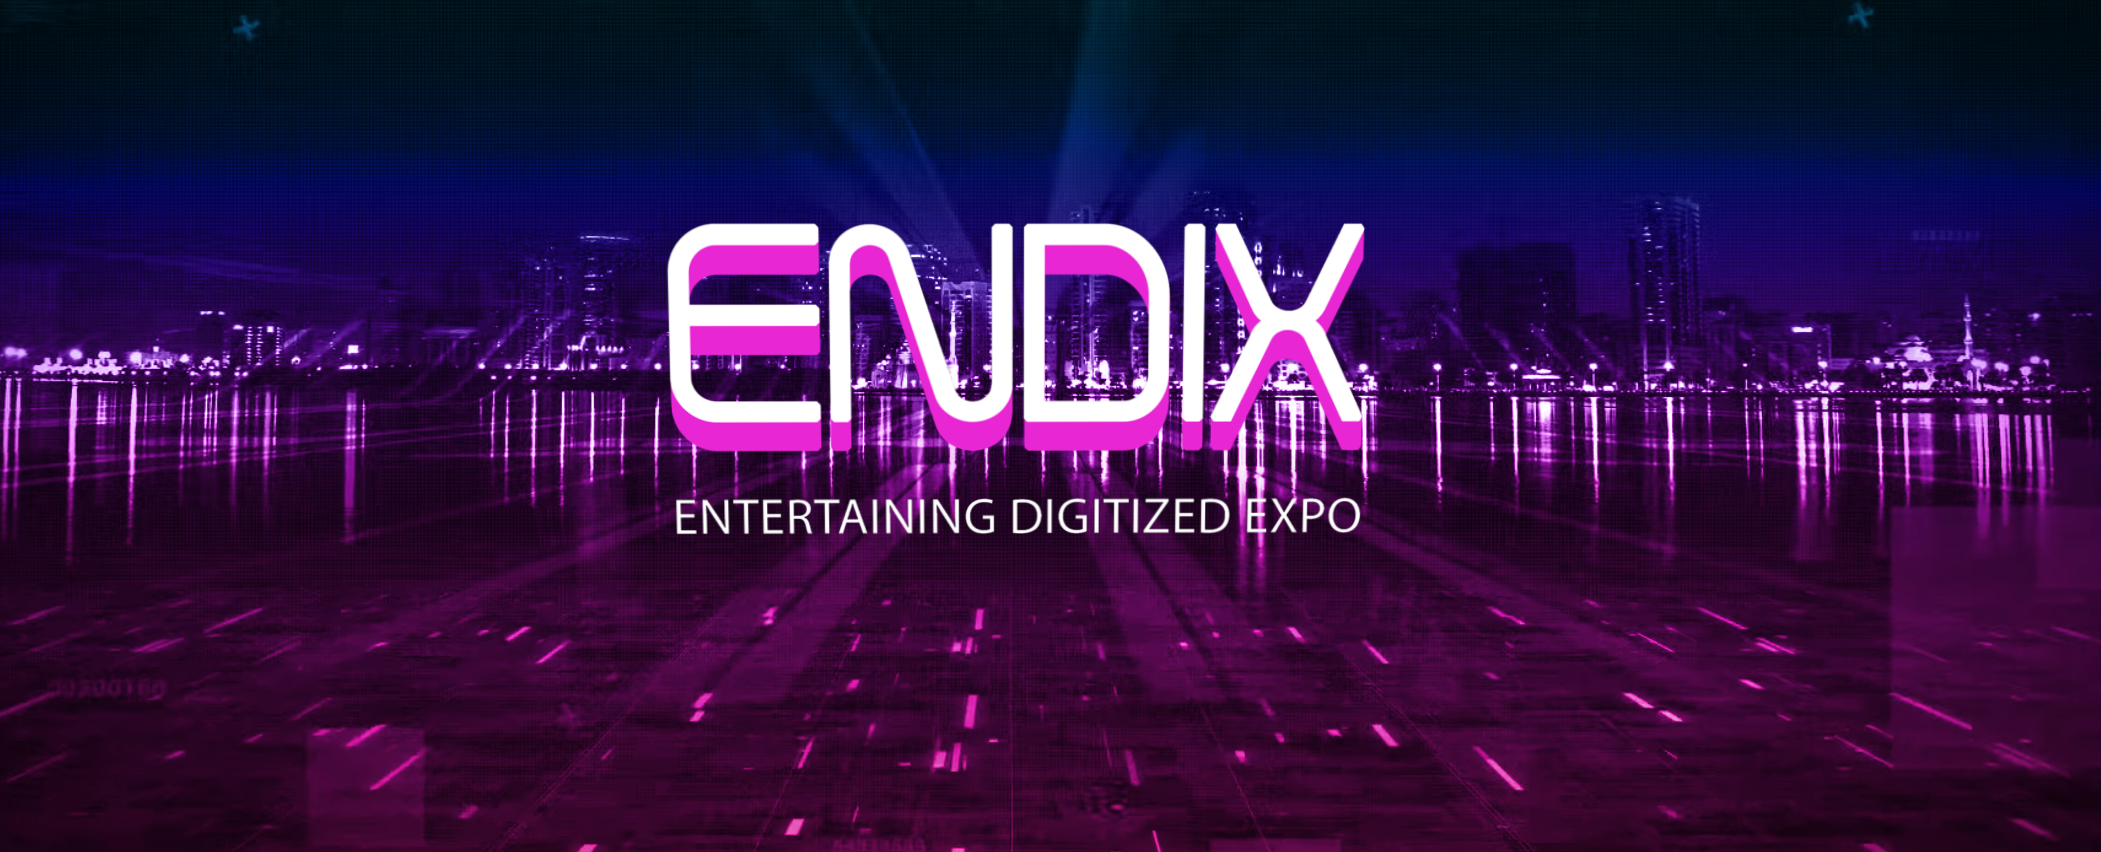 Endix Expo